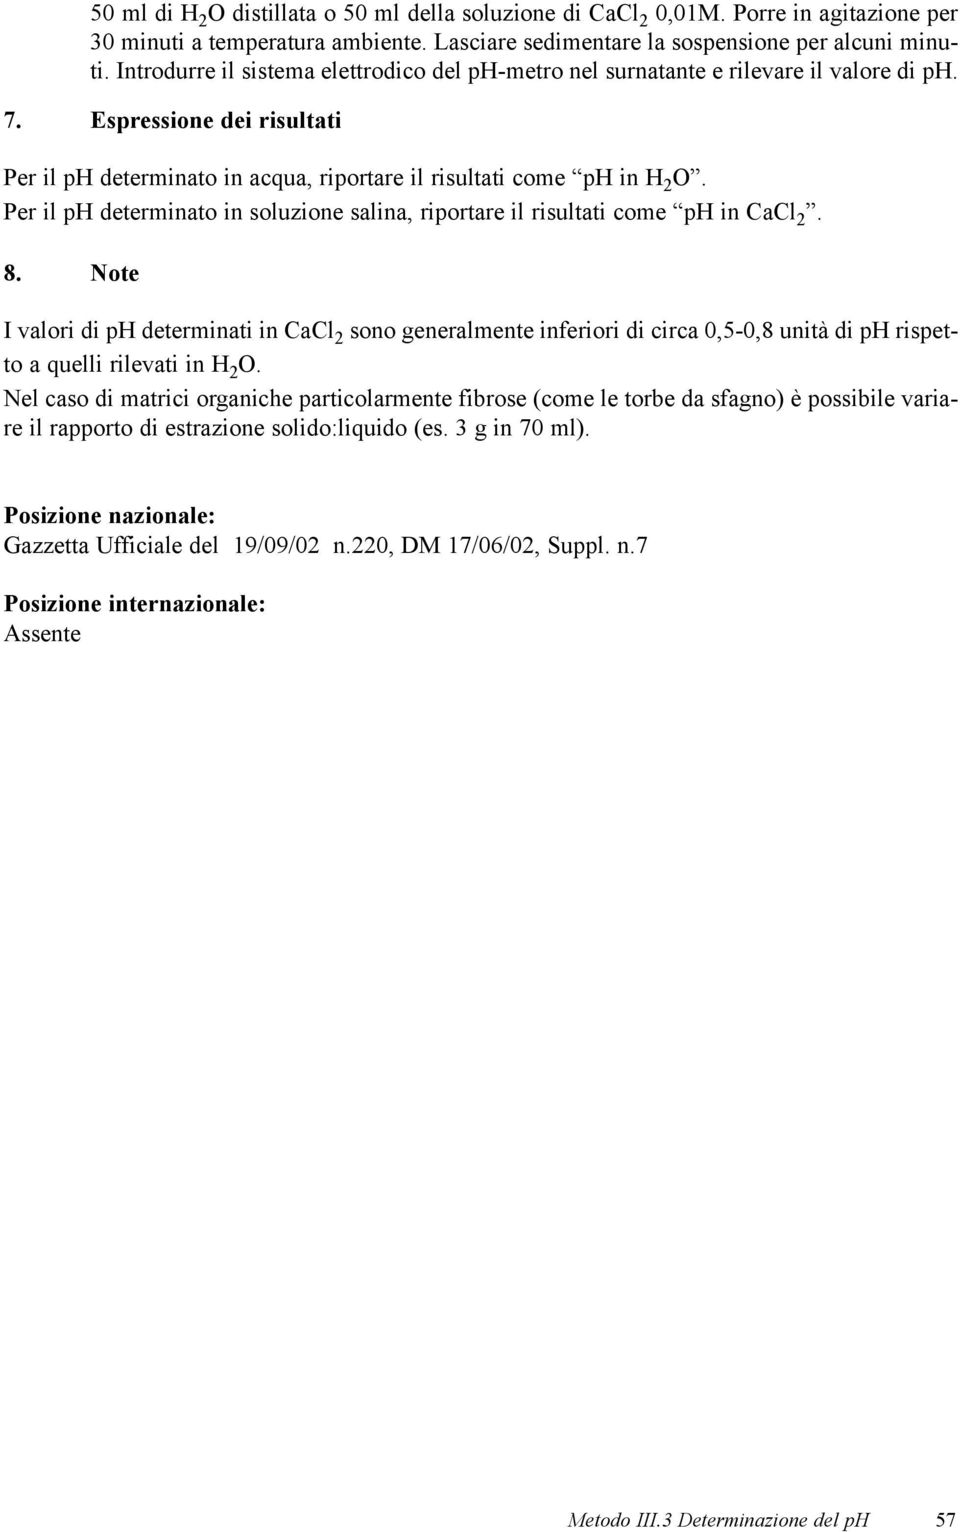 Per il ph determinato in soluzione salina, riportare il risultati come ph in CaCl 2. 8.